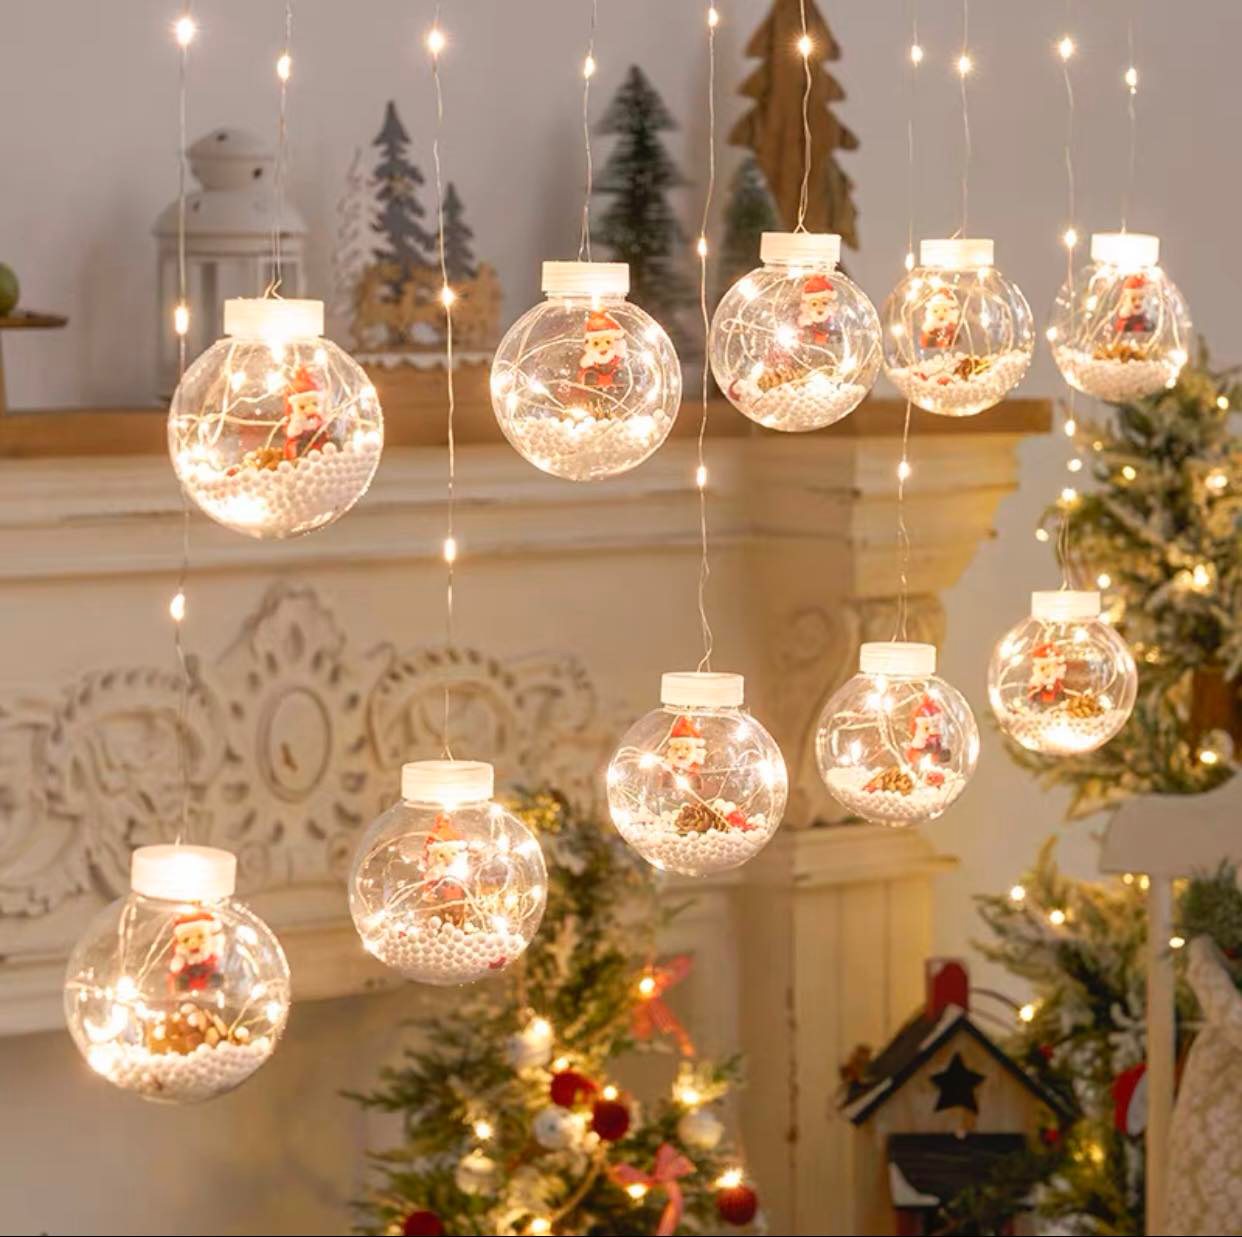 Đèn led trang trí Giáng sinh: Đèn led sẽ là sự lựa chọn hoàn hảo cho những người muốn trang trí nhà cửa của mình trong không khí Giáng sinh. Chúng rực rỡ và đầy màu sắc, mang lại sự tươi vui và hạnh phúc cho những người xung quanh. Hãy trang trí ngôi nhà của bạn bằng những chiếc đèn led đầy sáng tạo để tạo nên cảm giác thật ấm áp và đầy niềm vui.